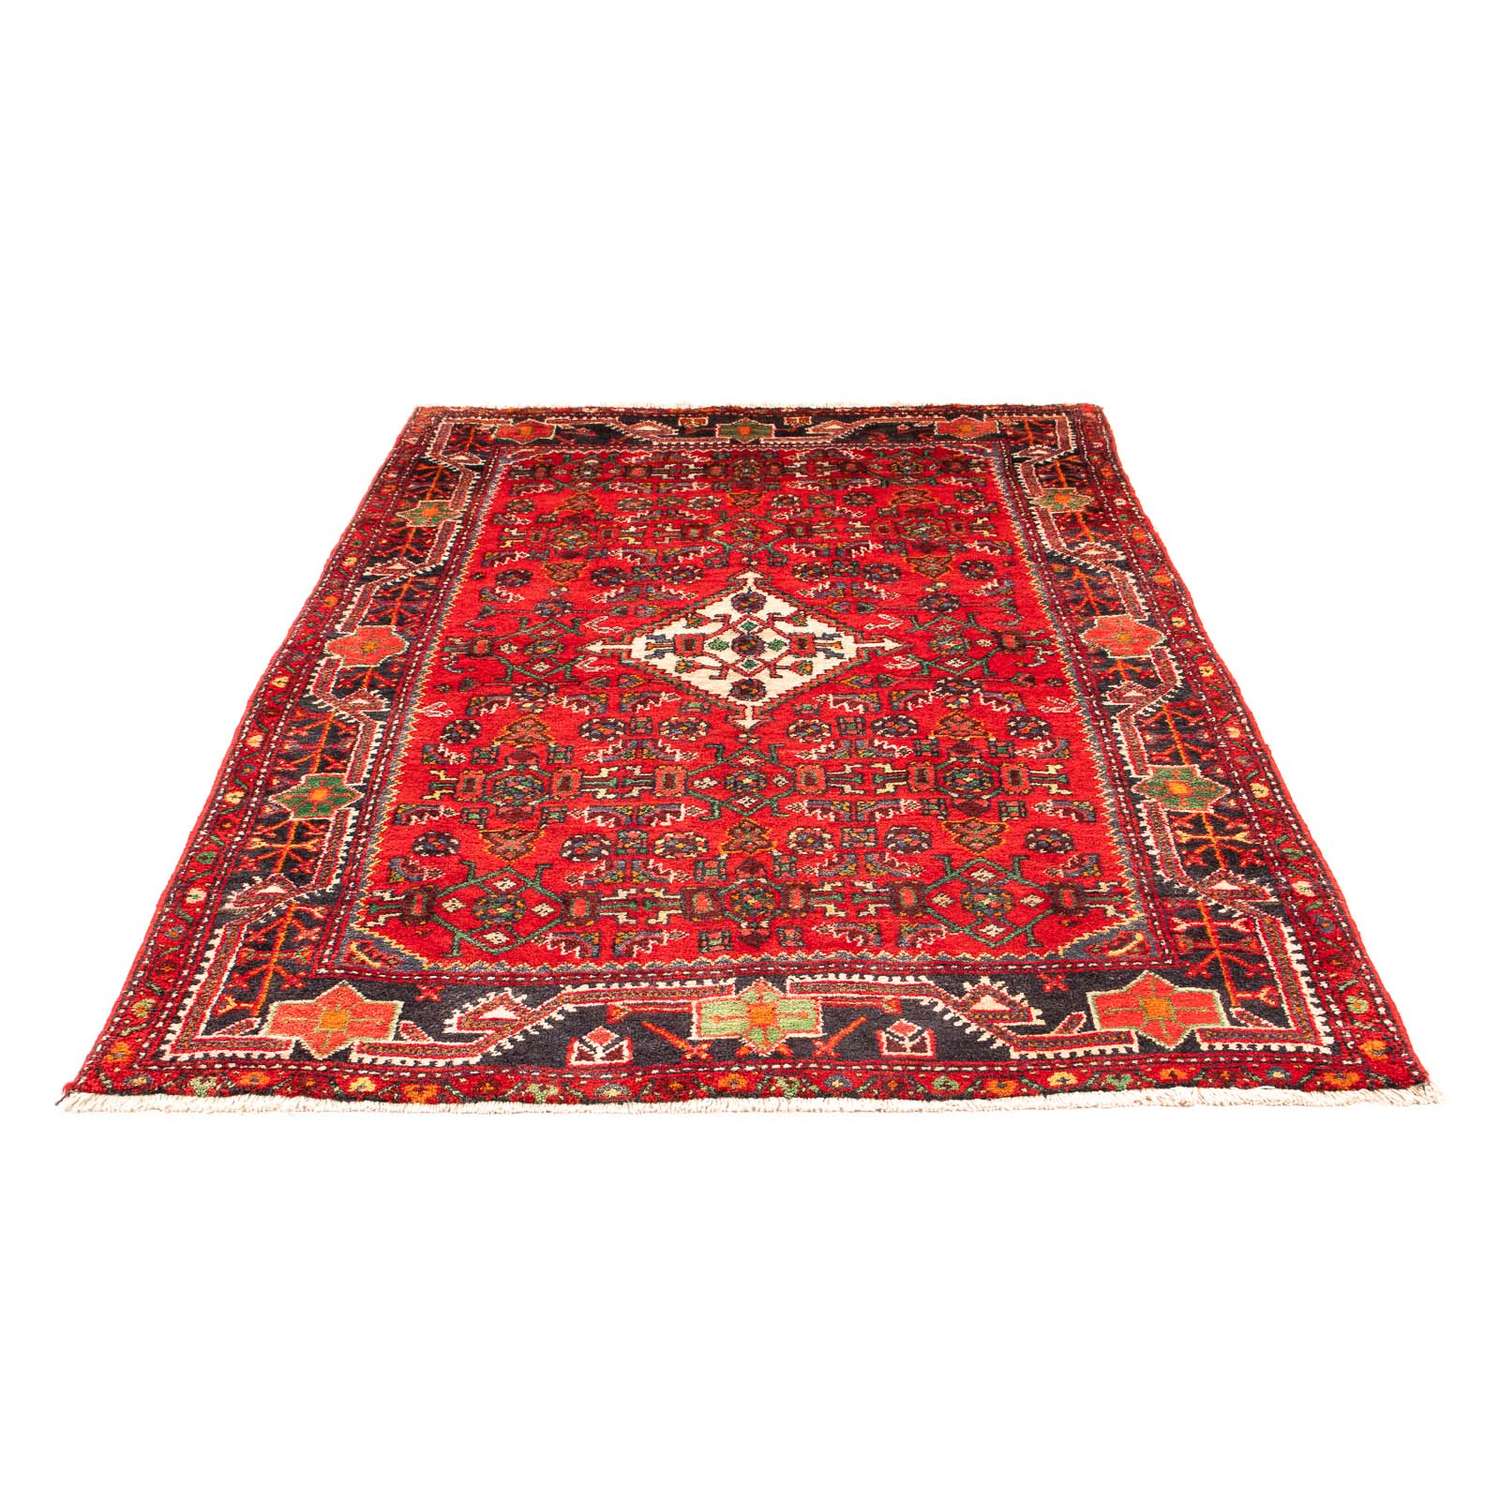 Tapis persan - Nomadic - 207 x 135 cm - rouge